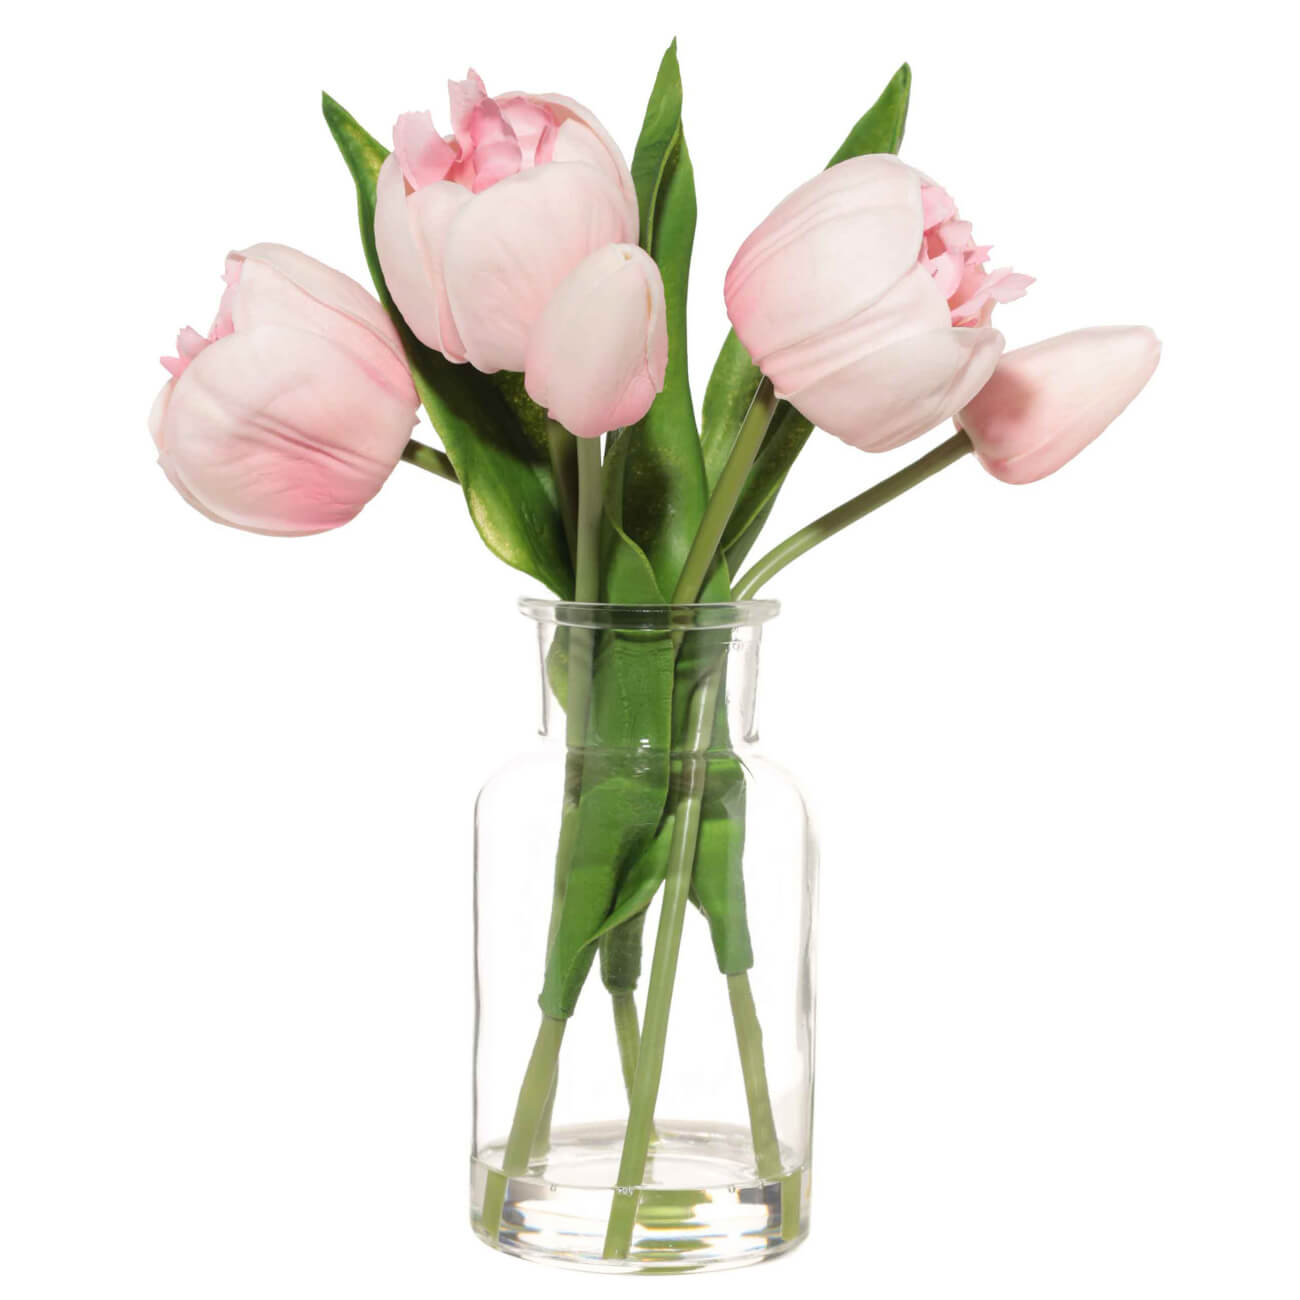 Букет искусственный, 21 см, в вазе, полиуретан/стекло, Розовые тюльпаны, Tulip garden букет гимн школе